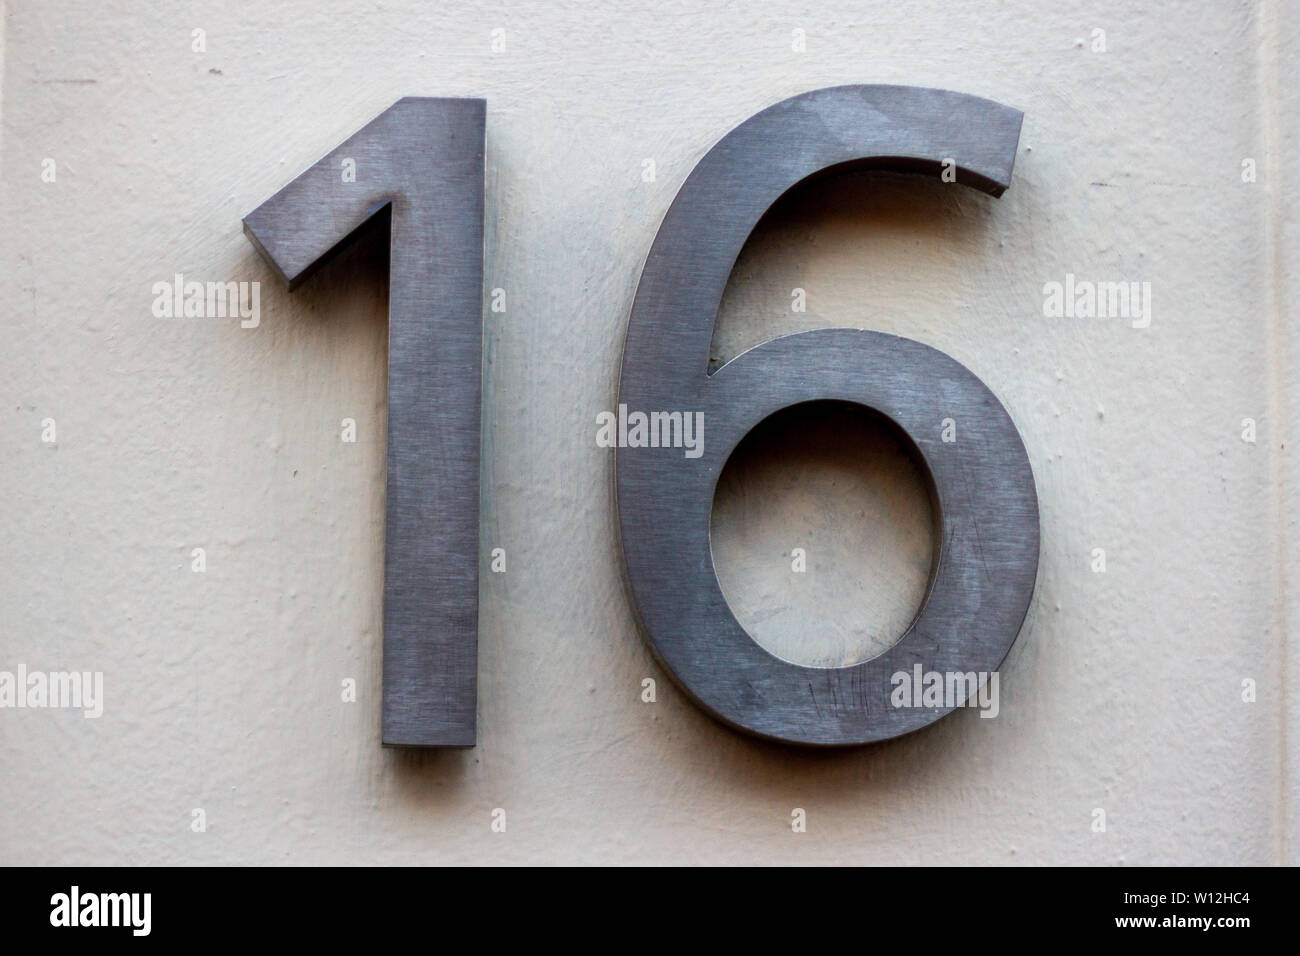 Haus Nummer 16 mit sechzehn in gebürstetem Chrom oder Edelstahl auf einer weißen Wand Stockfoto